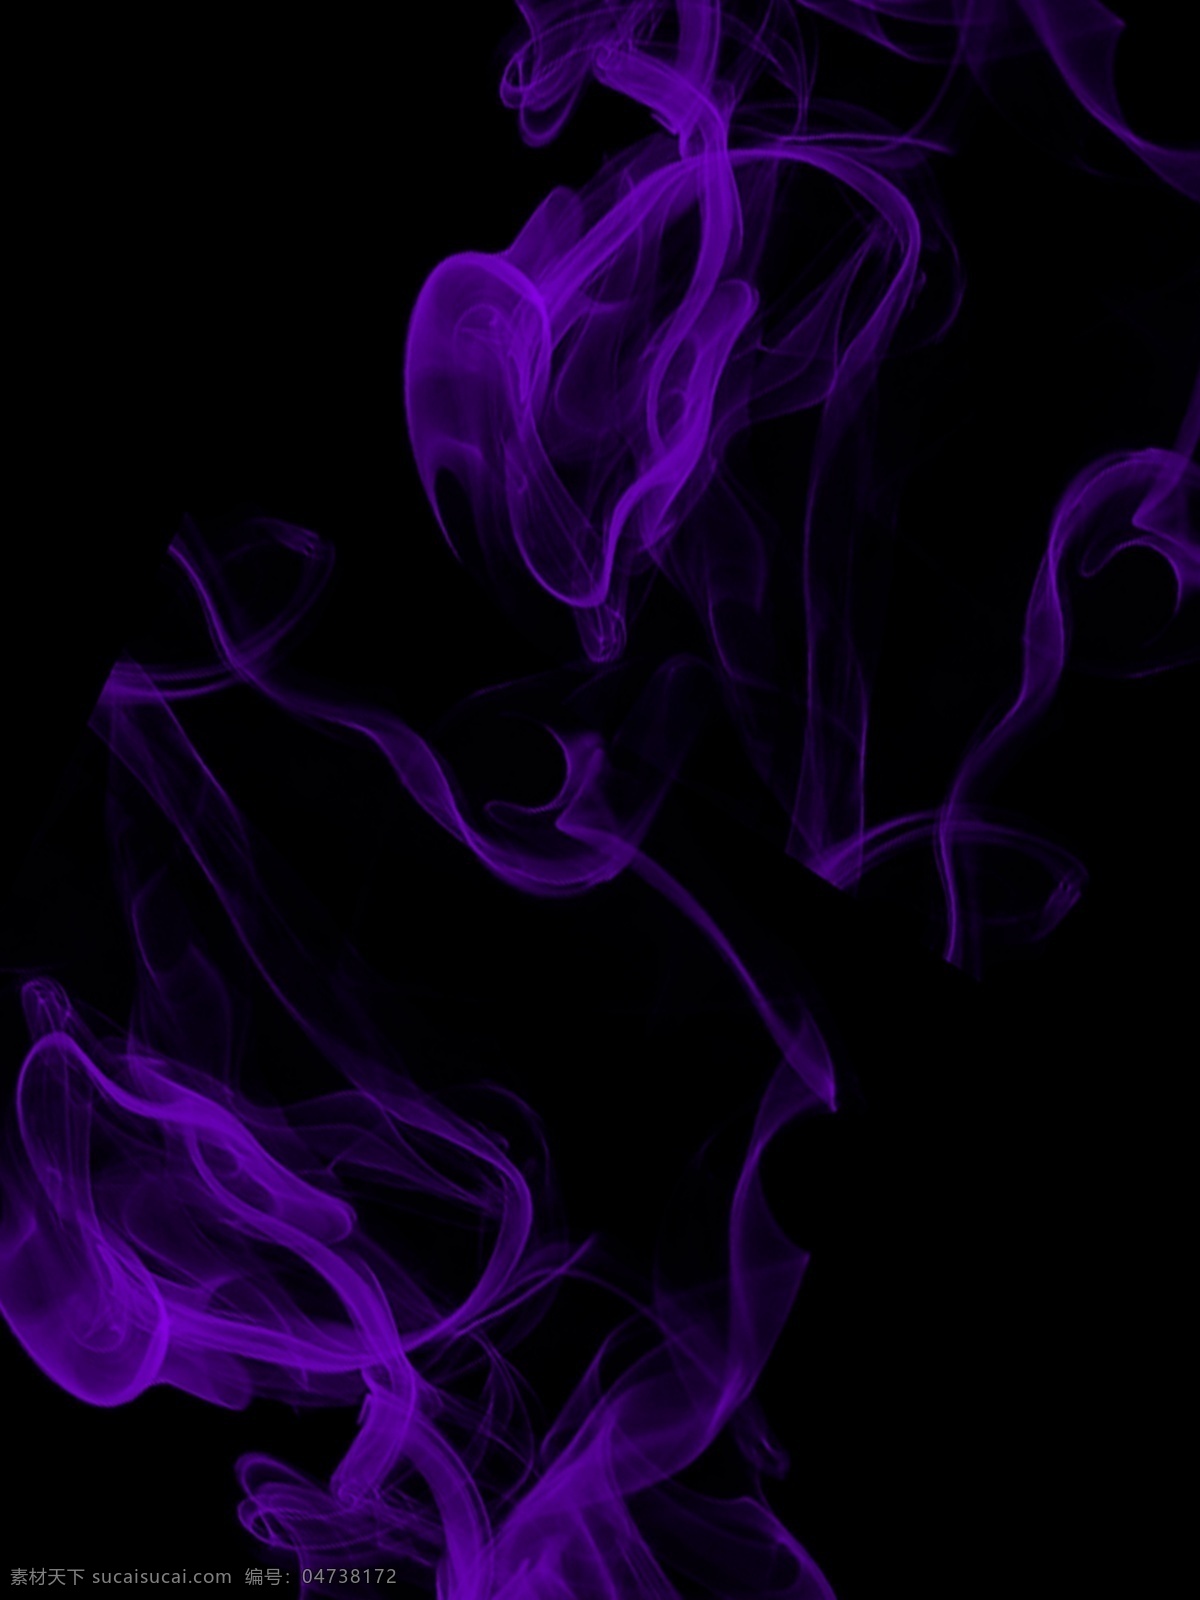 原创 紫红色 烟雾 简约 时尚 背景 神秘 唯美 质感